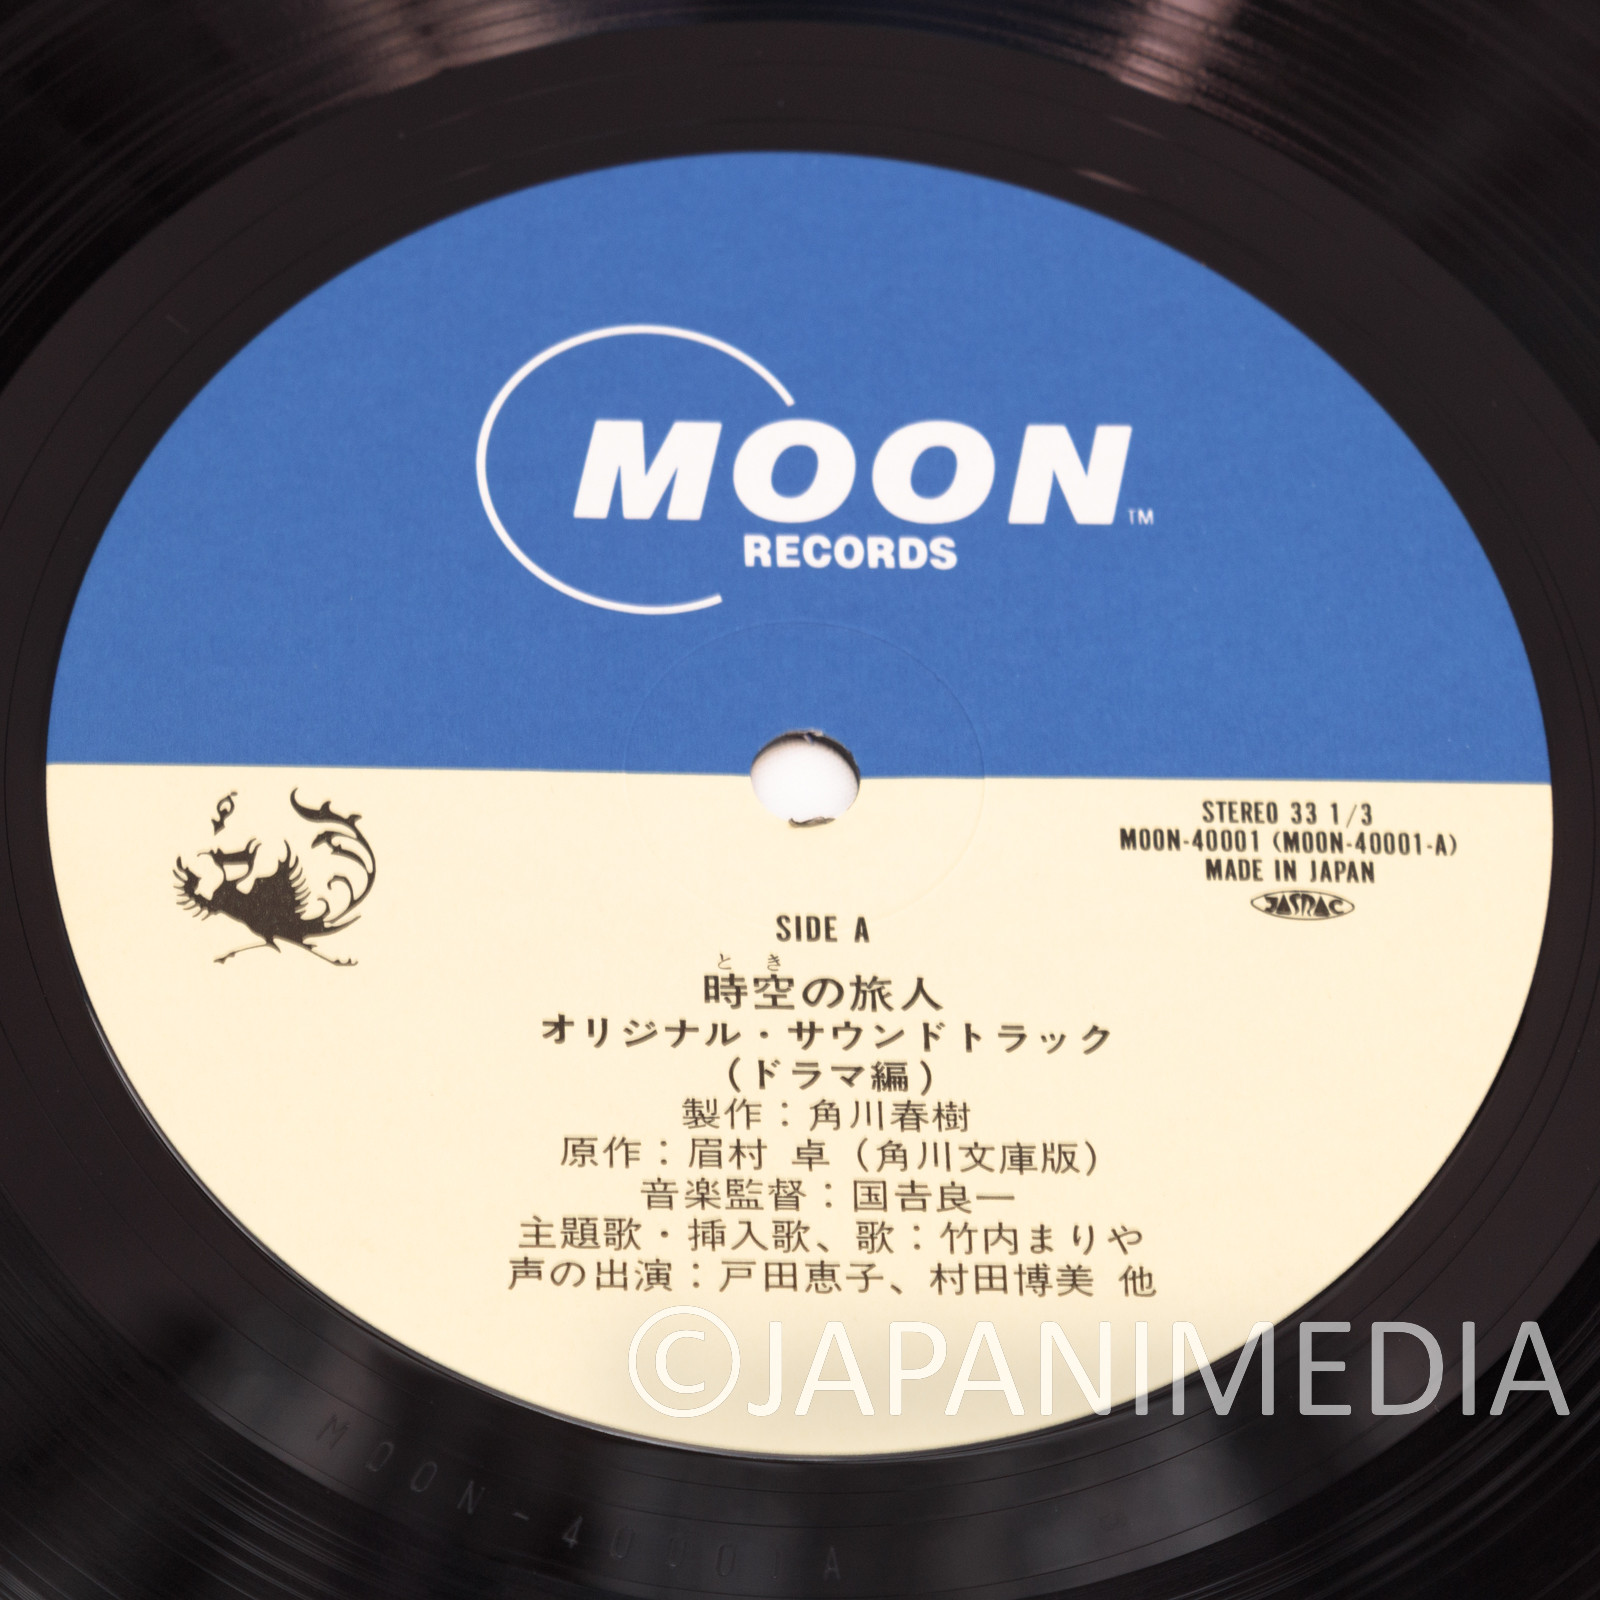 Time Stranger Drama Dialogue & Songs 12" Vinyl 2LP Record MOON-40001-2